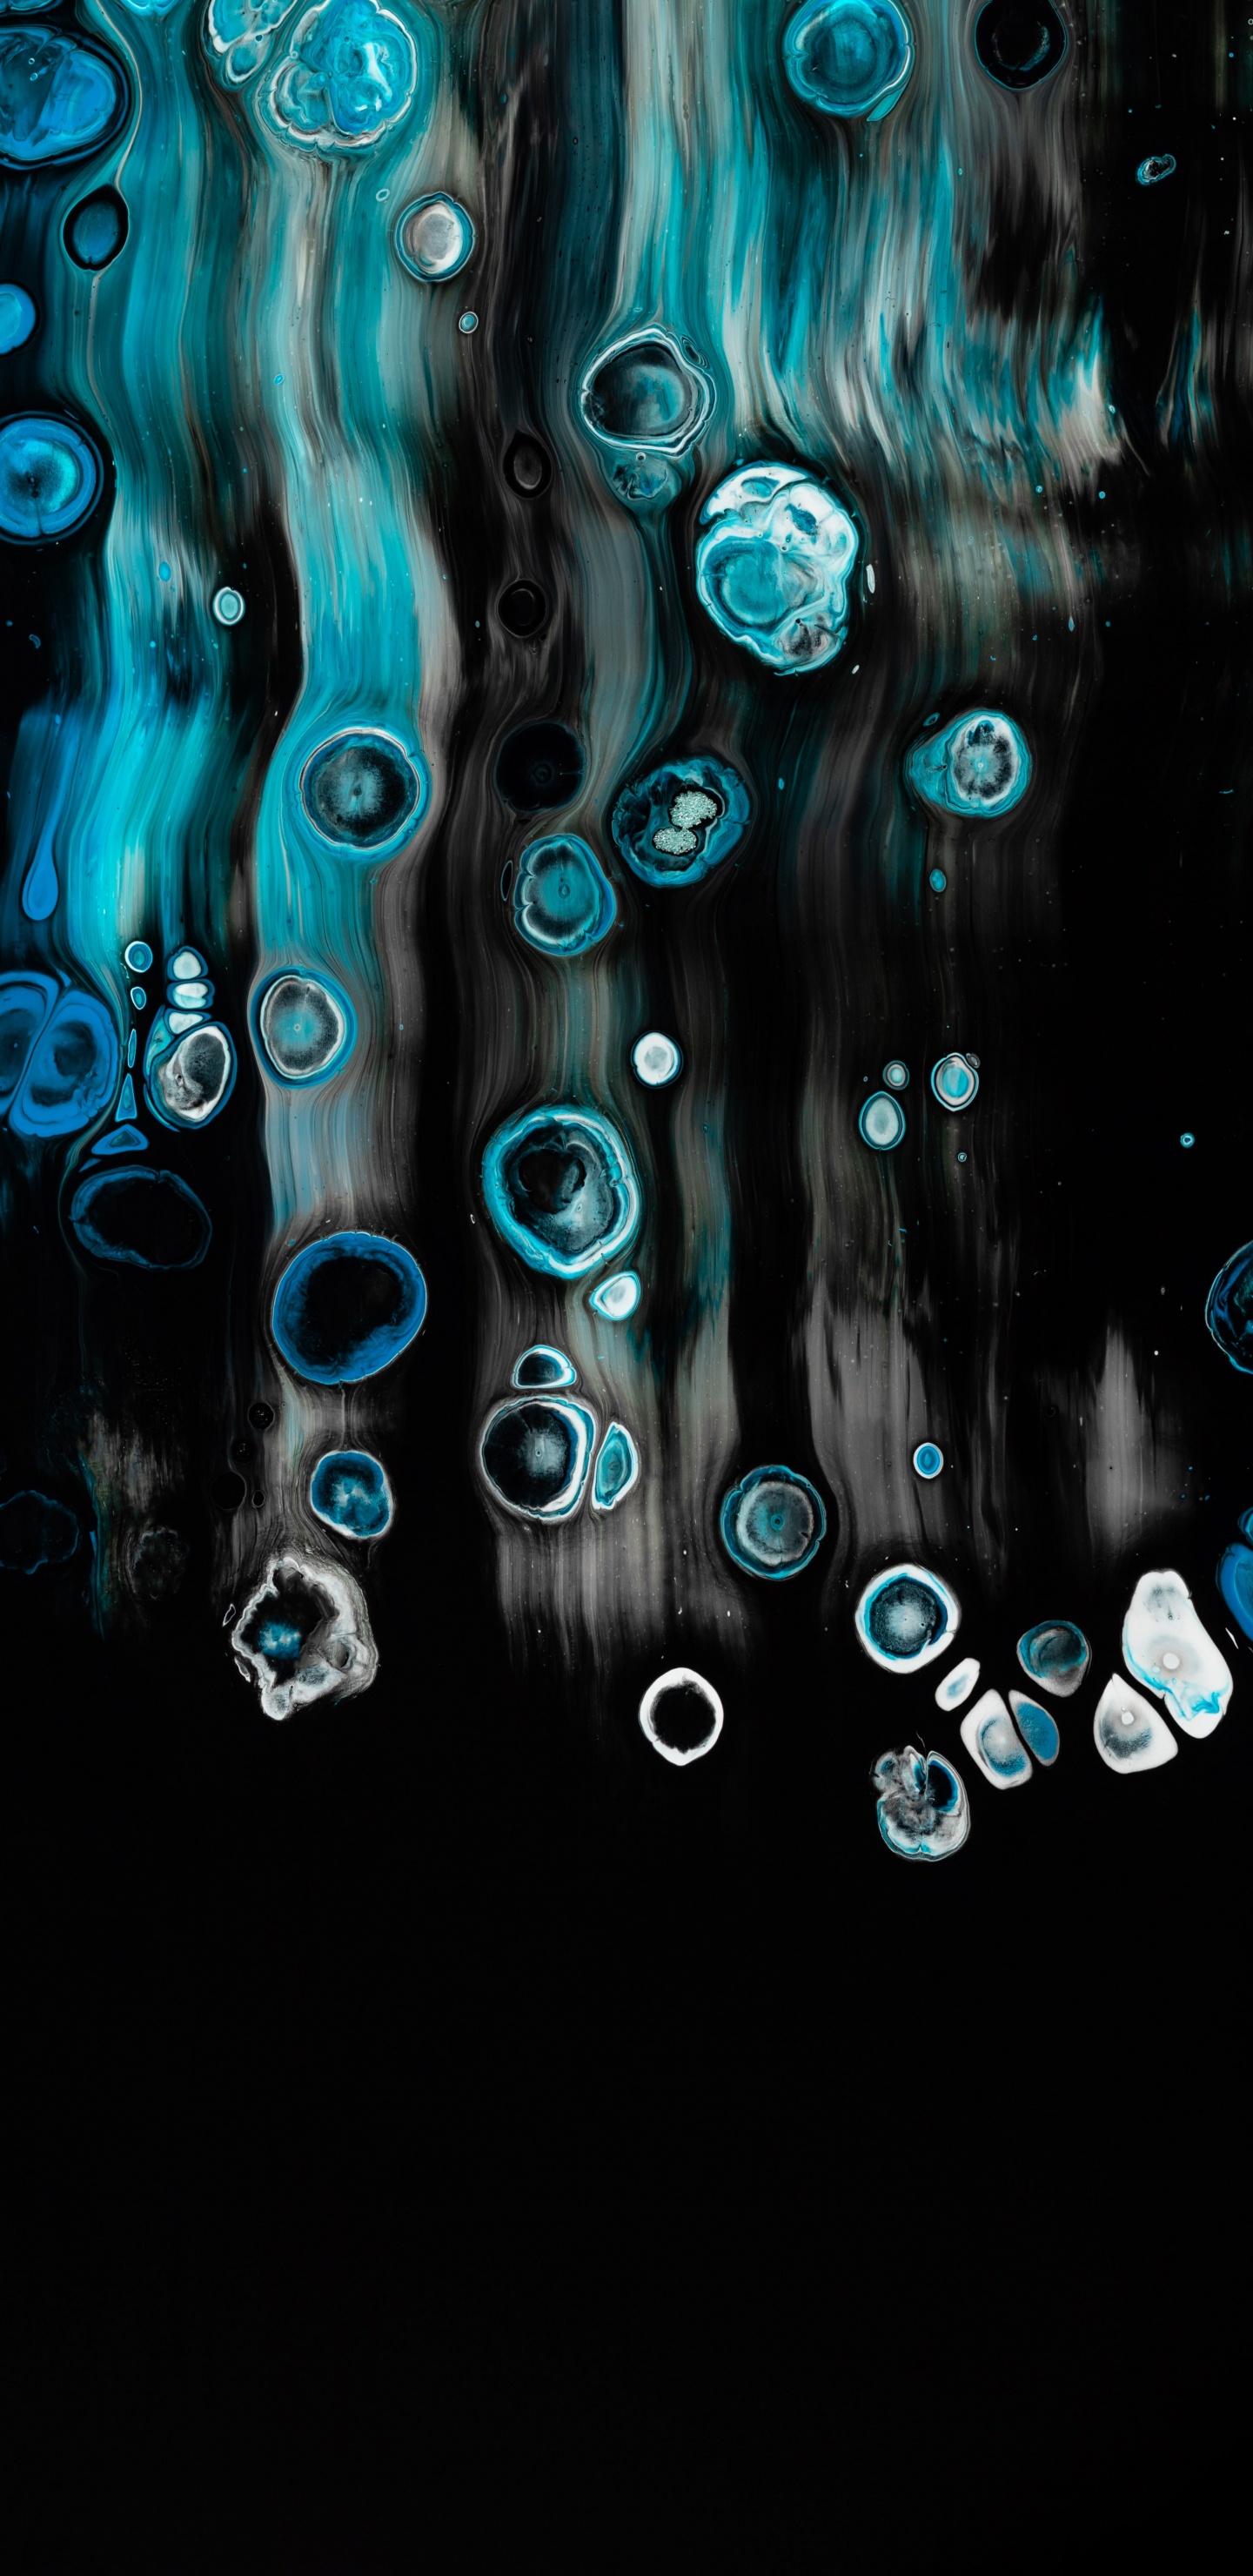 Papel Tapiz Digital de Luz Azul y Blanca. Wallpaper in 1440x2960 Resolution